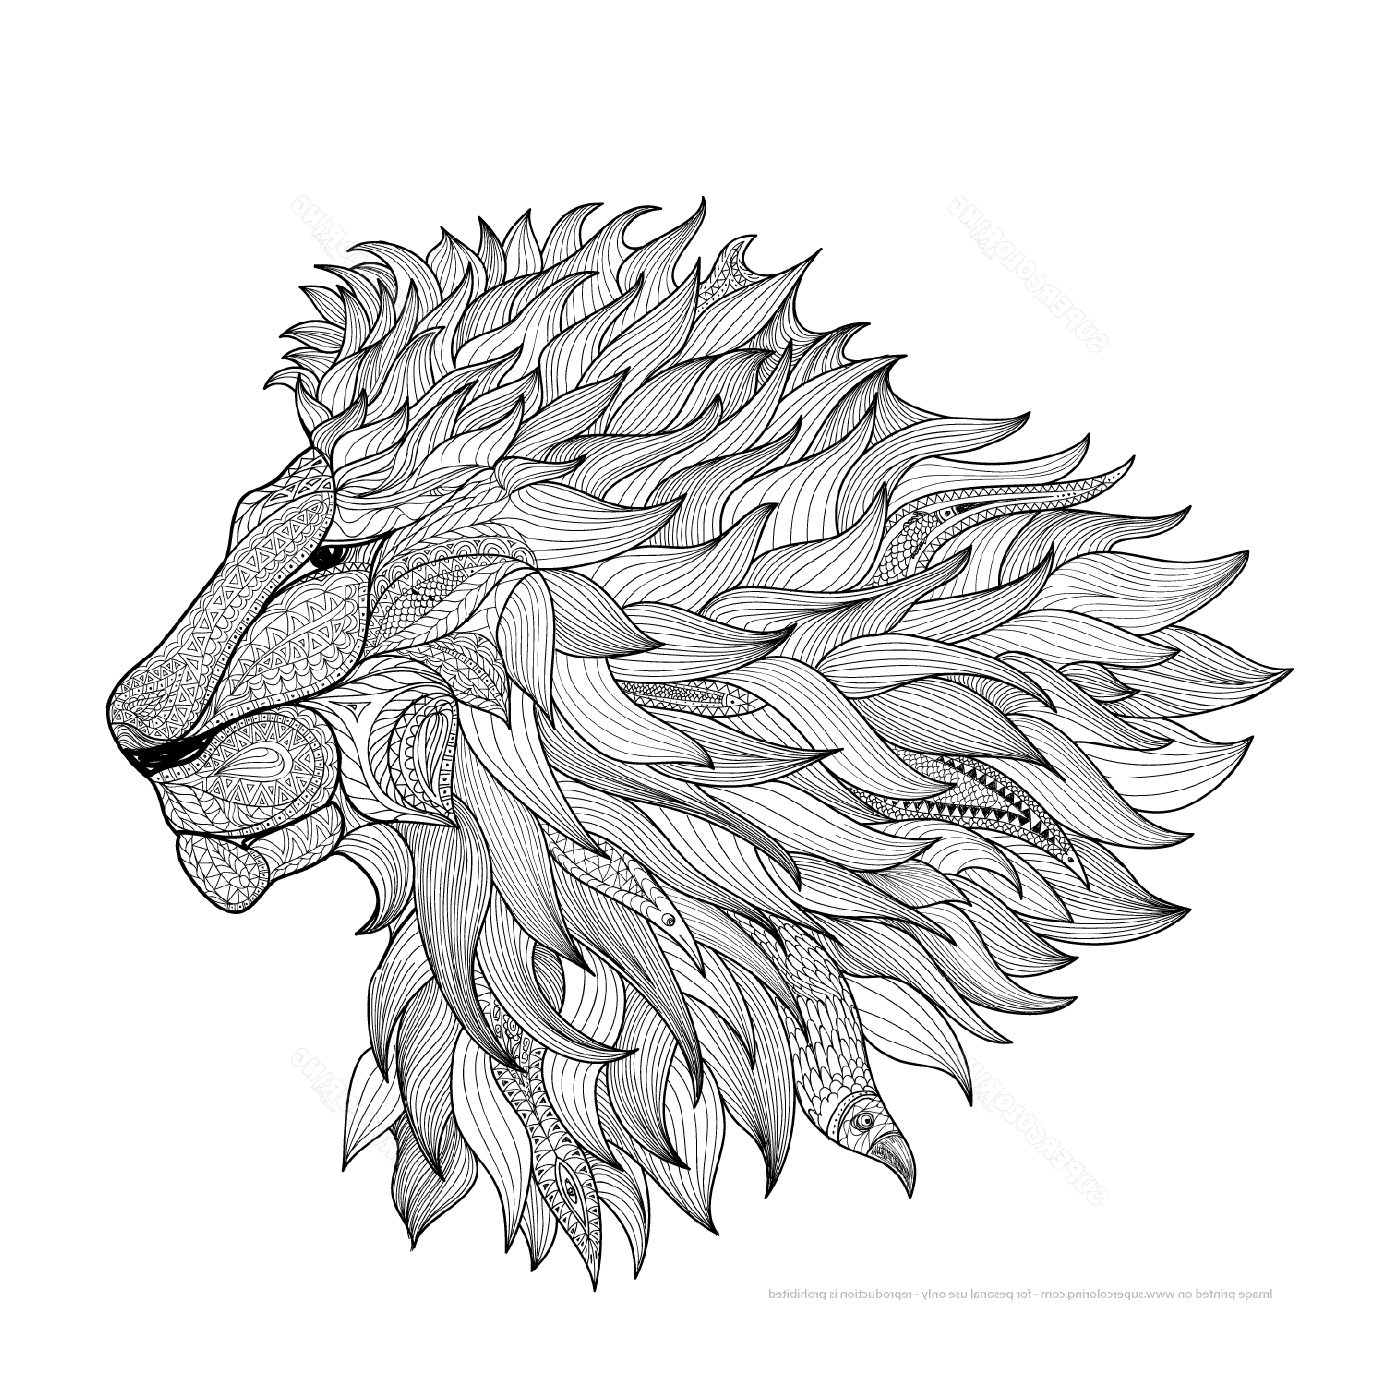  Голова большого льва 